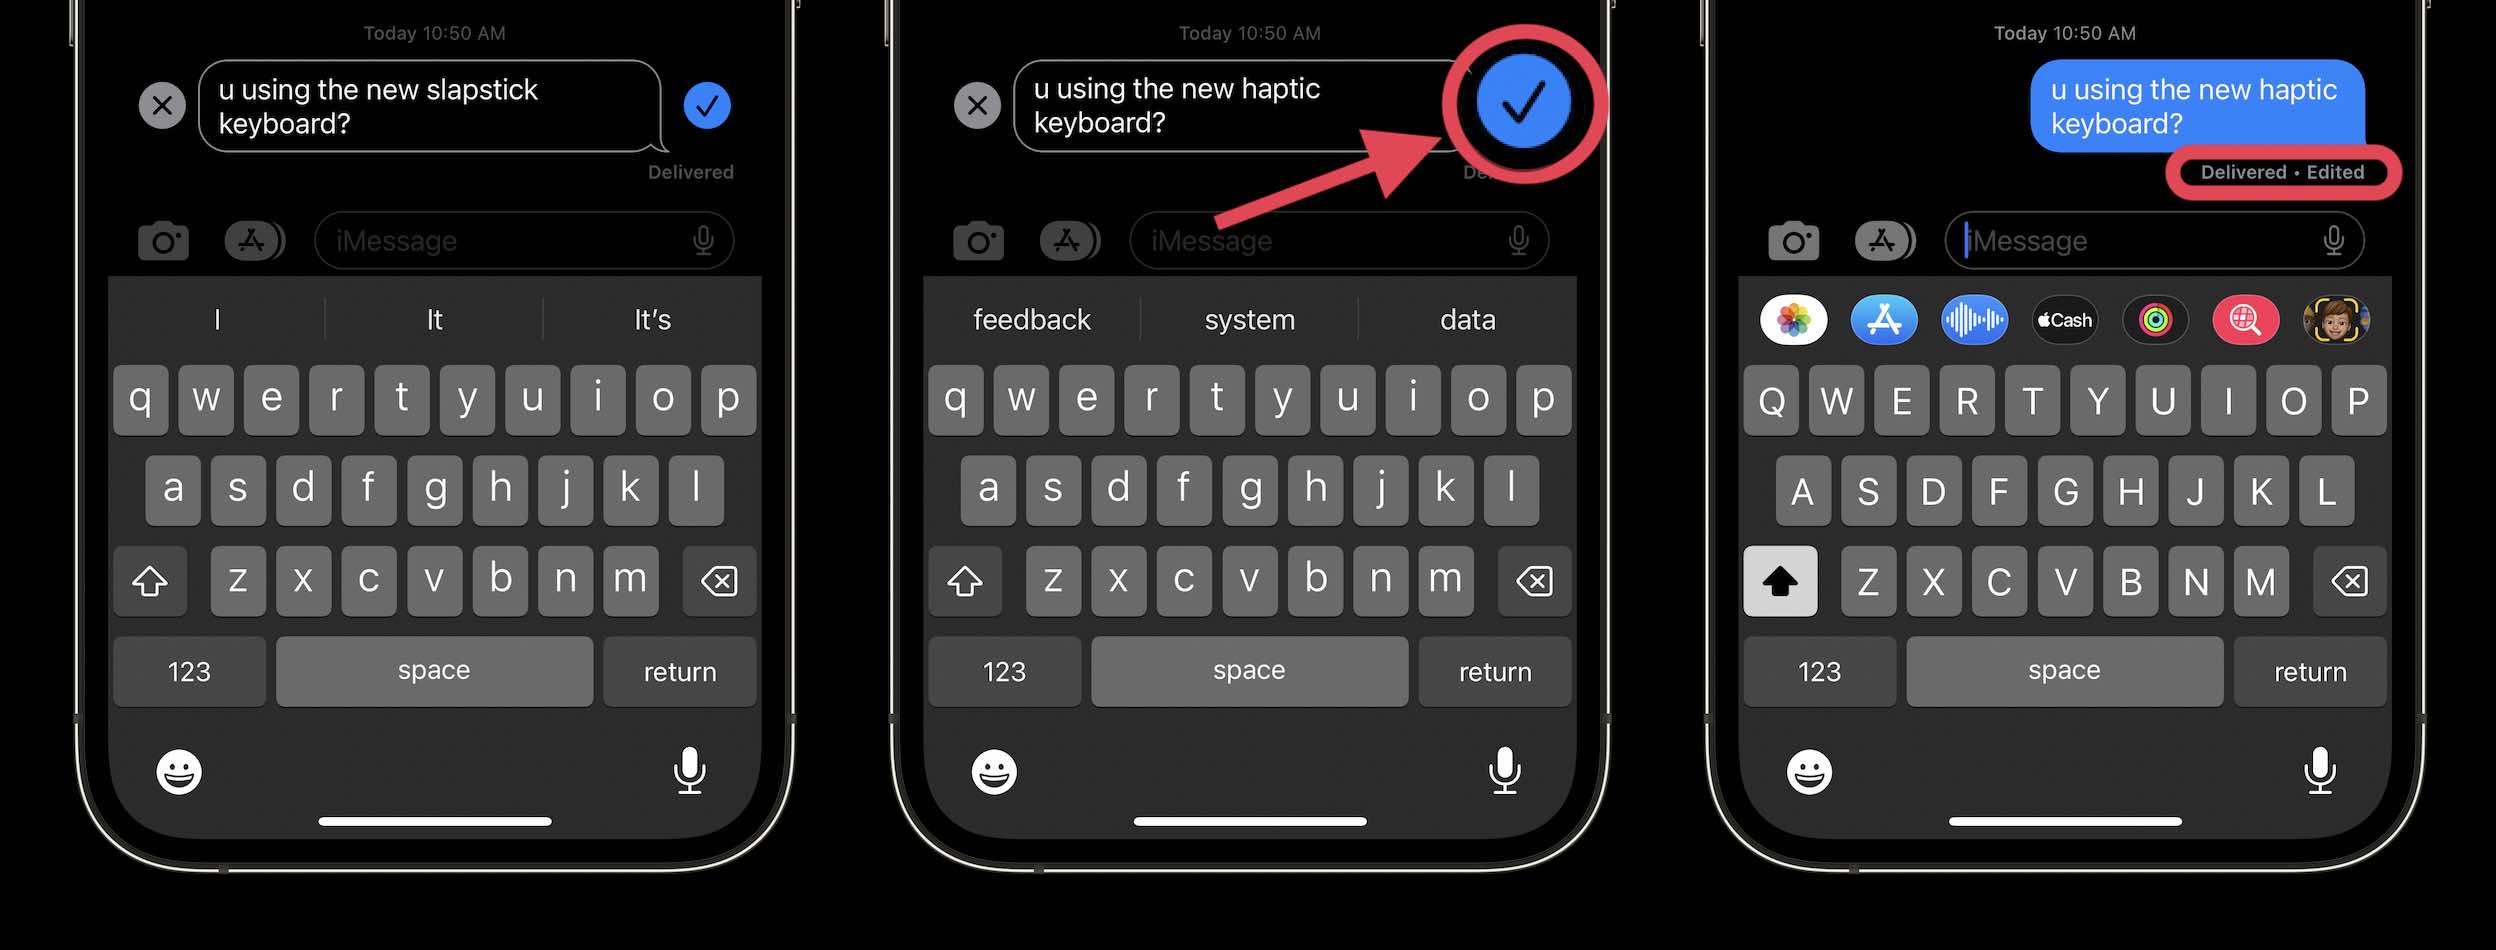 Với hướng dẫn iOS 16 cho iPhone, bạn sẽ khám phá được những tính năng mới cực kỳ hữu ích, như iMessages. Được tích hợp trực tiếp vào điện thoại iPhone, iMessages giúp bạn gửi tin nhắn dễ dàng, nhanh chóng và bảo mật. Bạn có thể thông báo cho bạn bè và đồng nghiệp biết về những hình ảnh đẹp, những cuộc trò chuyện thú vị của mình trên iMessages. 